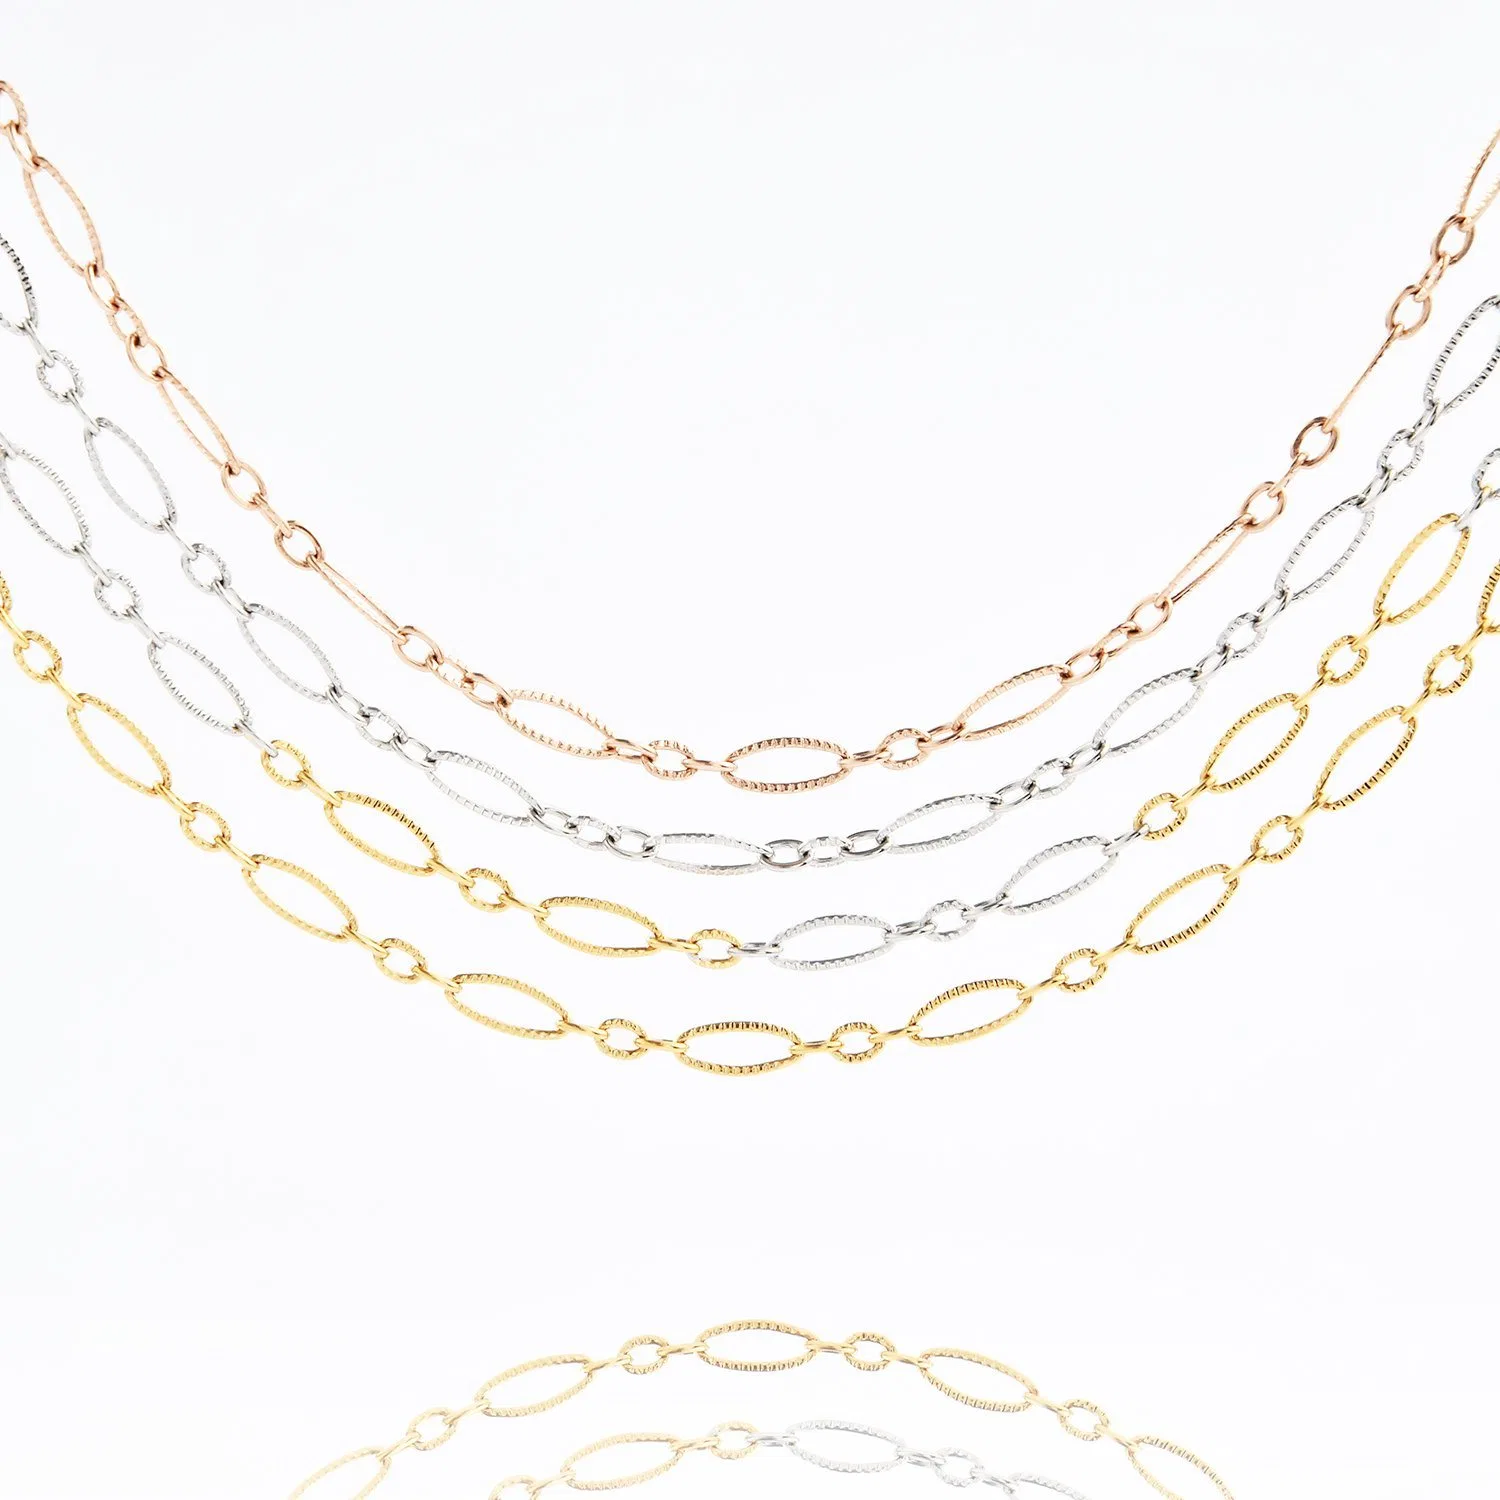 Nouveau design Hot sale acier inoxydable bijoux de mode pièces Lady Collier plaqué or avec chaîne en chaîne et bracelet style Anklet